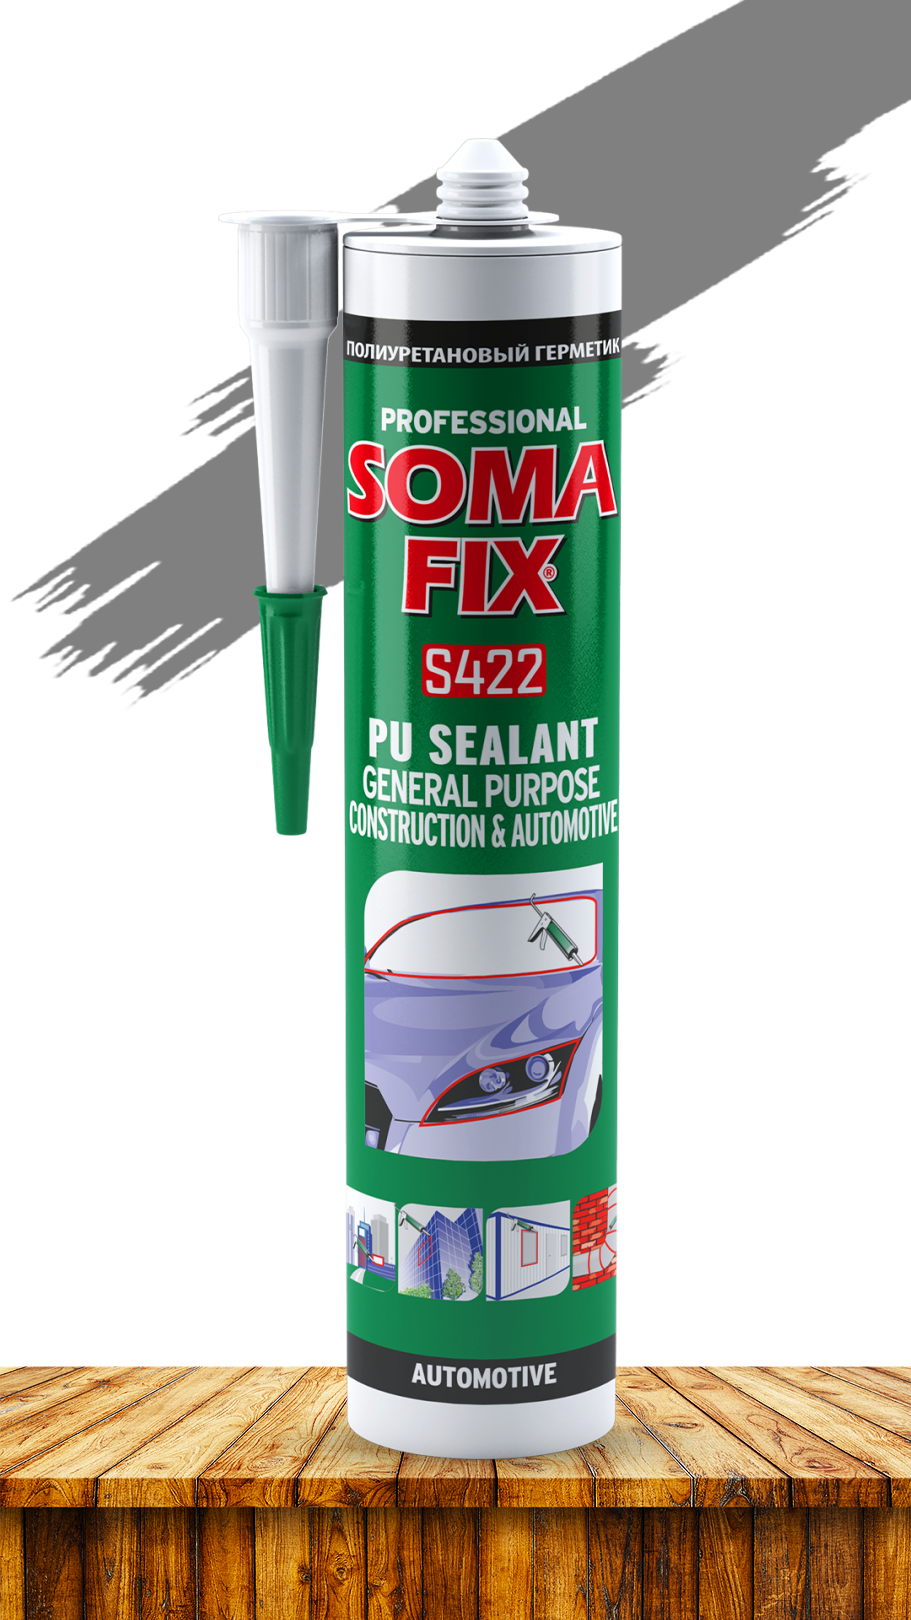 Герметик SOMA FIX полиуретановый, общестроительный (серый), 280 мл S424. Купить от производителя по отличной цене